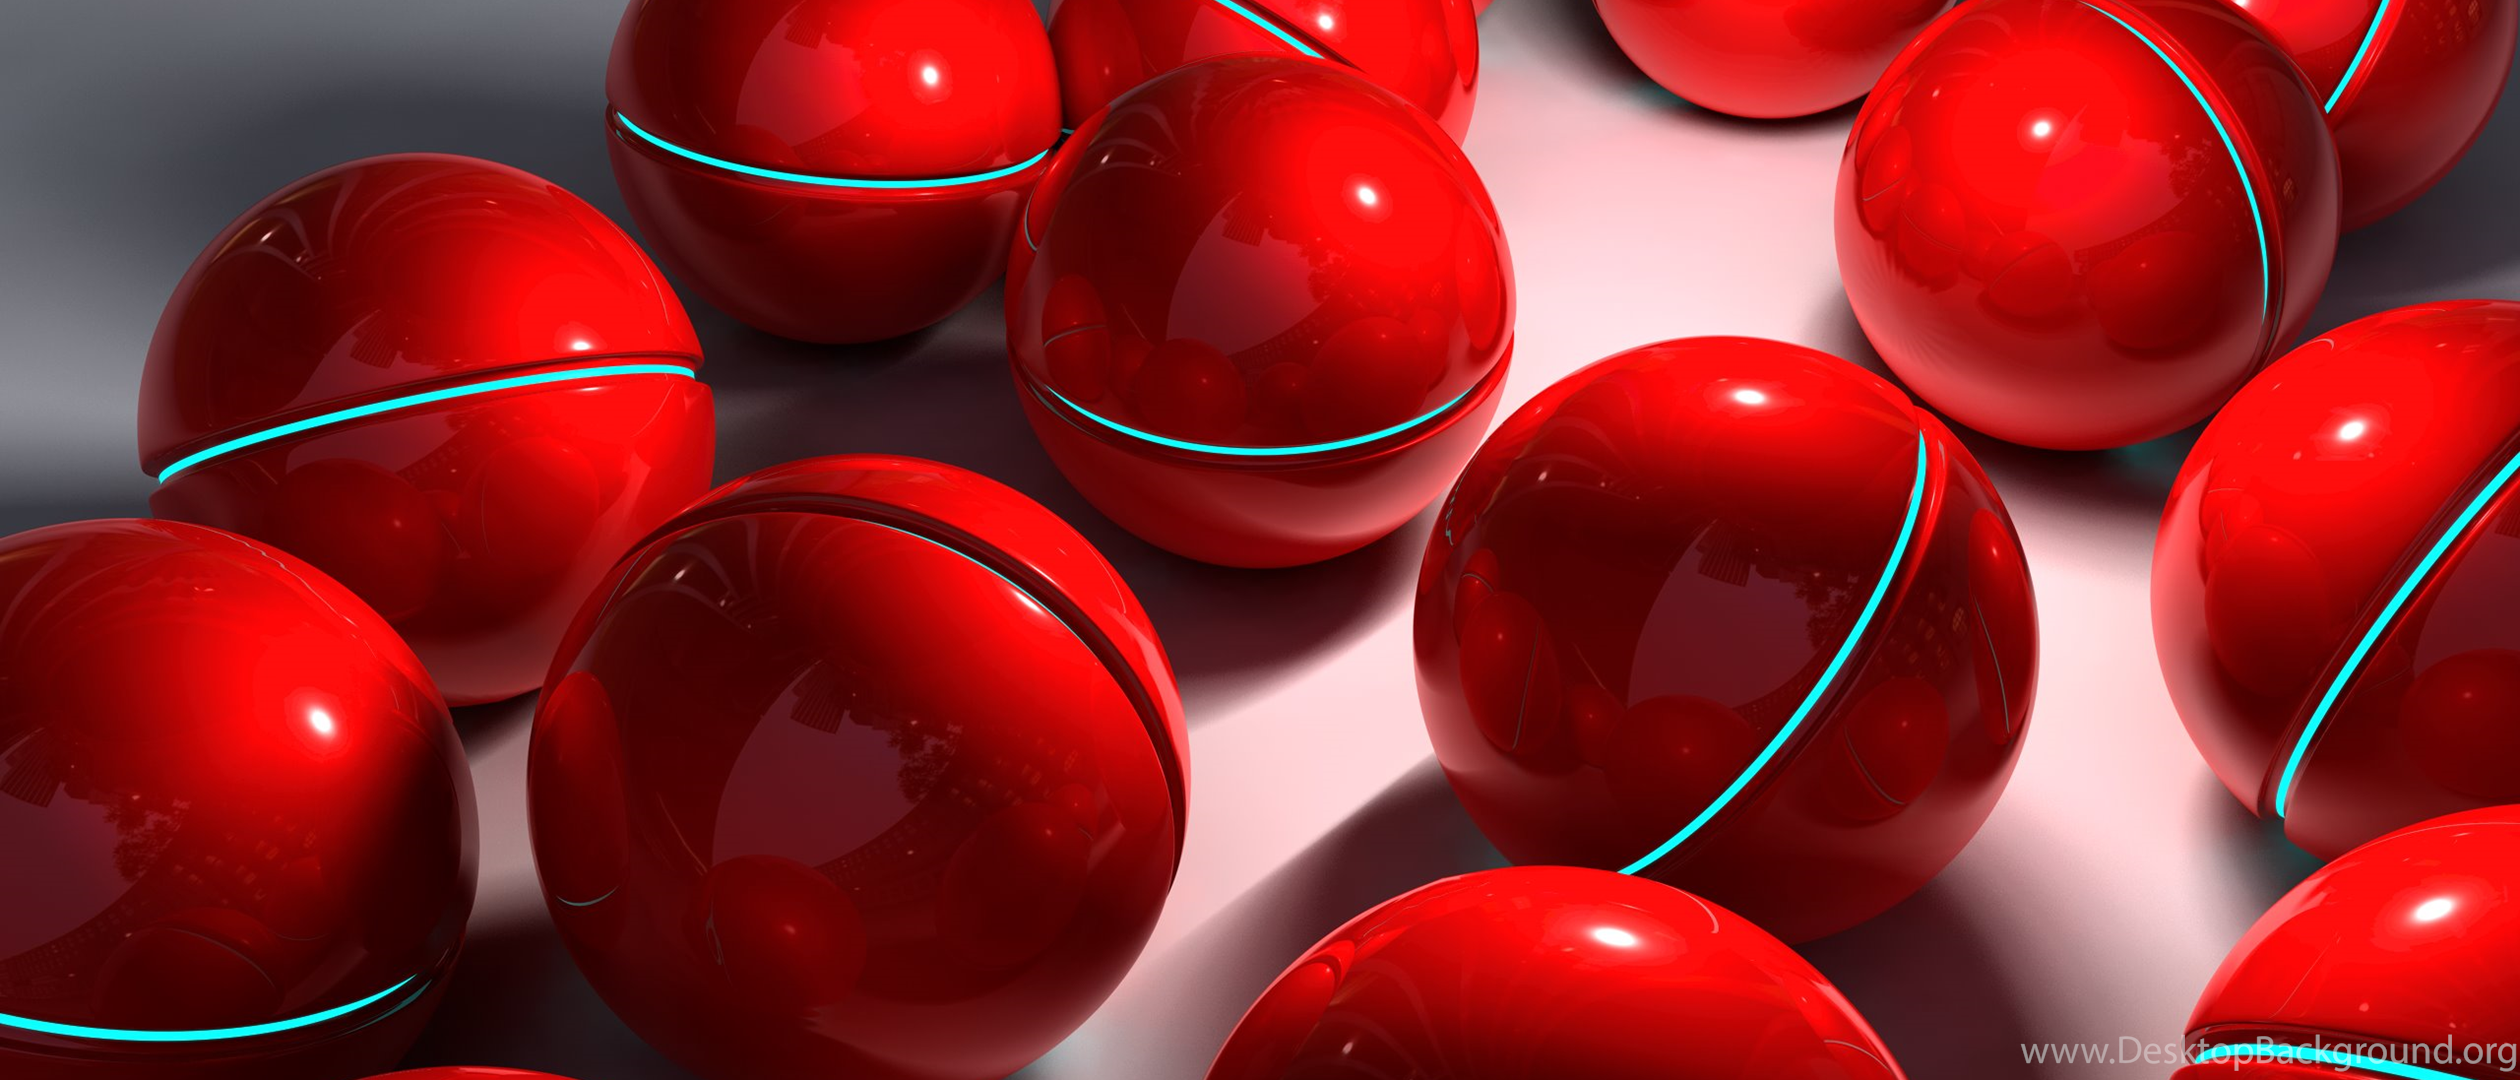 Download red balls. Красивый красный шар на столе. Три красных шара. Красная сфера. Вид сверху стол красные шары.